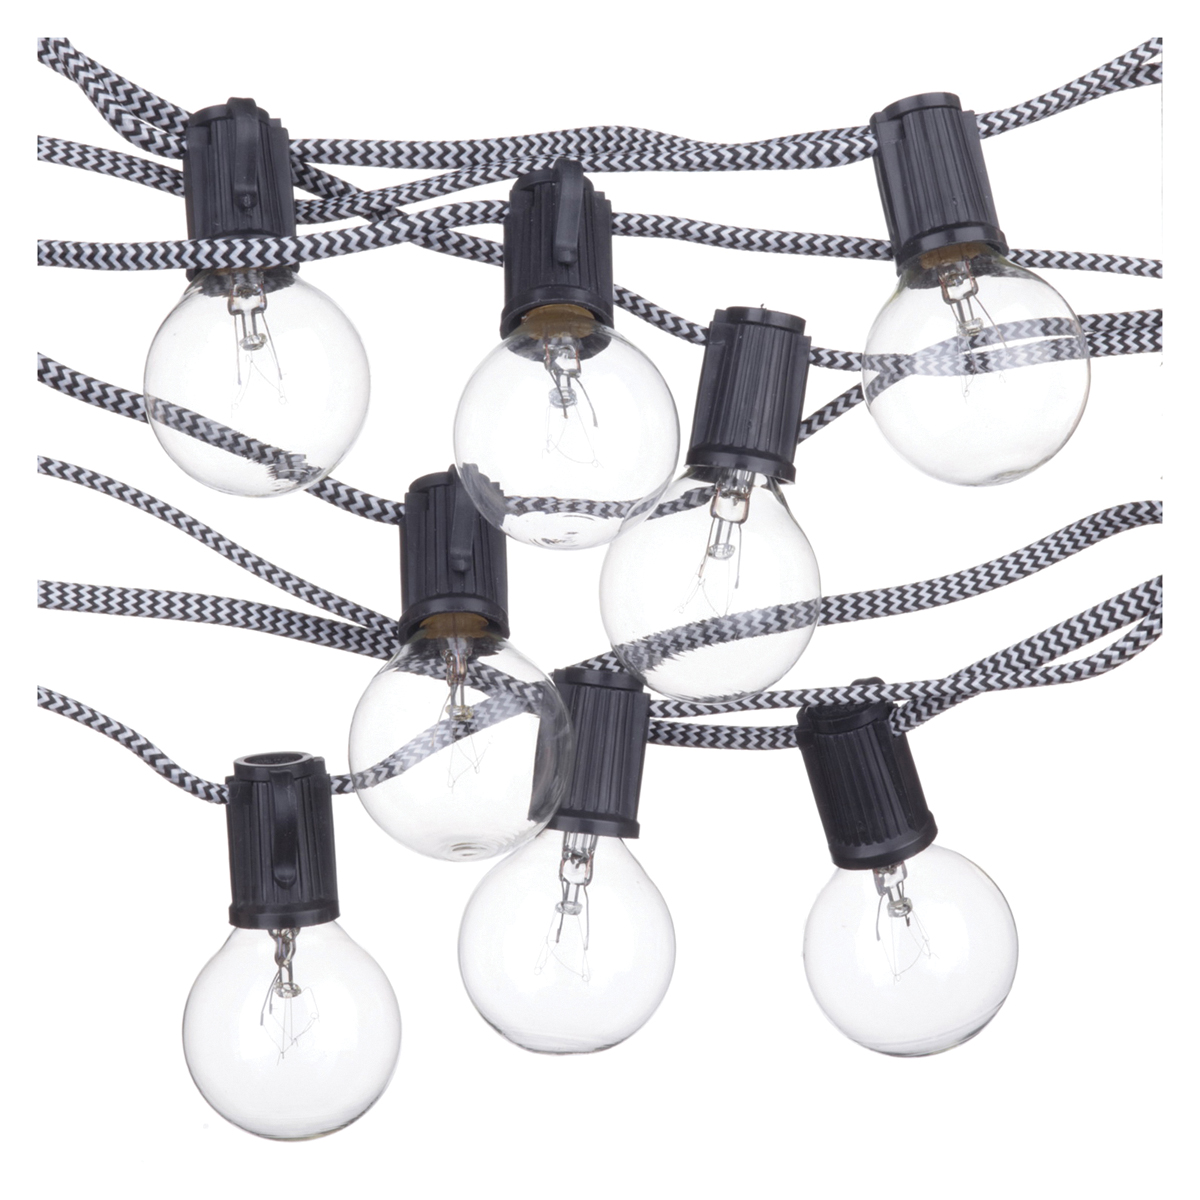 Denver Designer Series 67800 String Light Set, 10-Lamp, G12 Lamp, Warm White Light